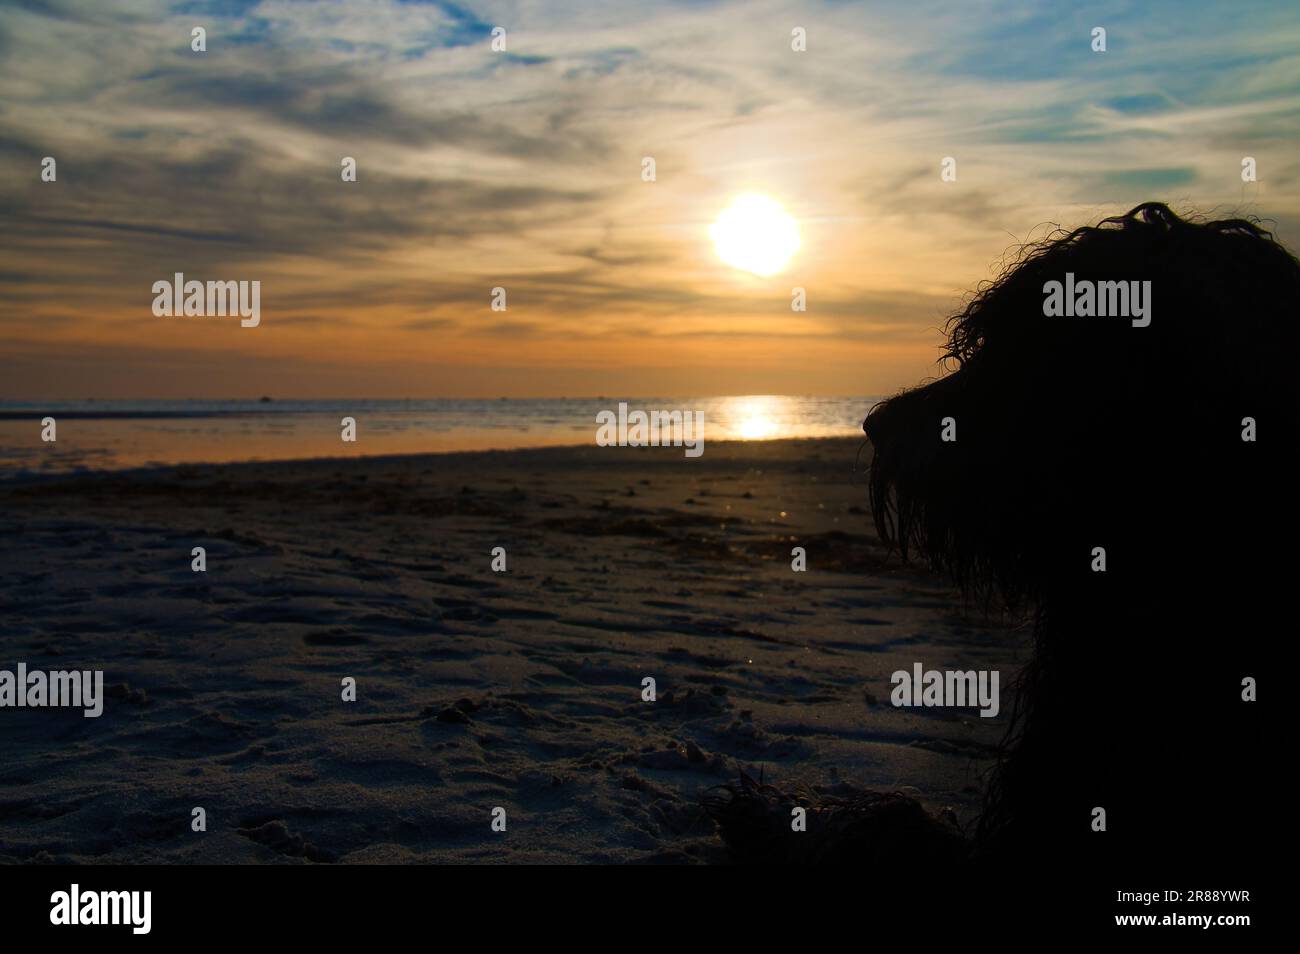 Tramonto, cane sdraiato che guarda sulla spiaggia di sabbia al mare illuminato. Onde luminose. Isola di Poel sul Mar Baltico. Foto della natura dalla costa Foto Stock